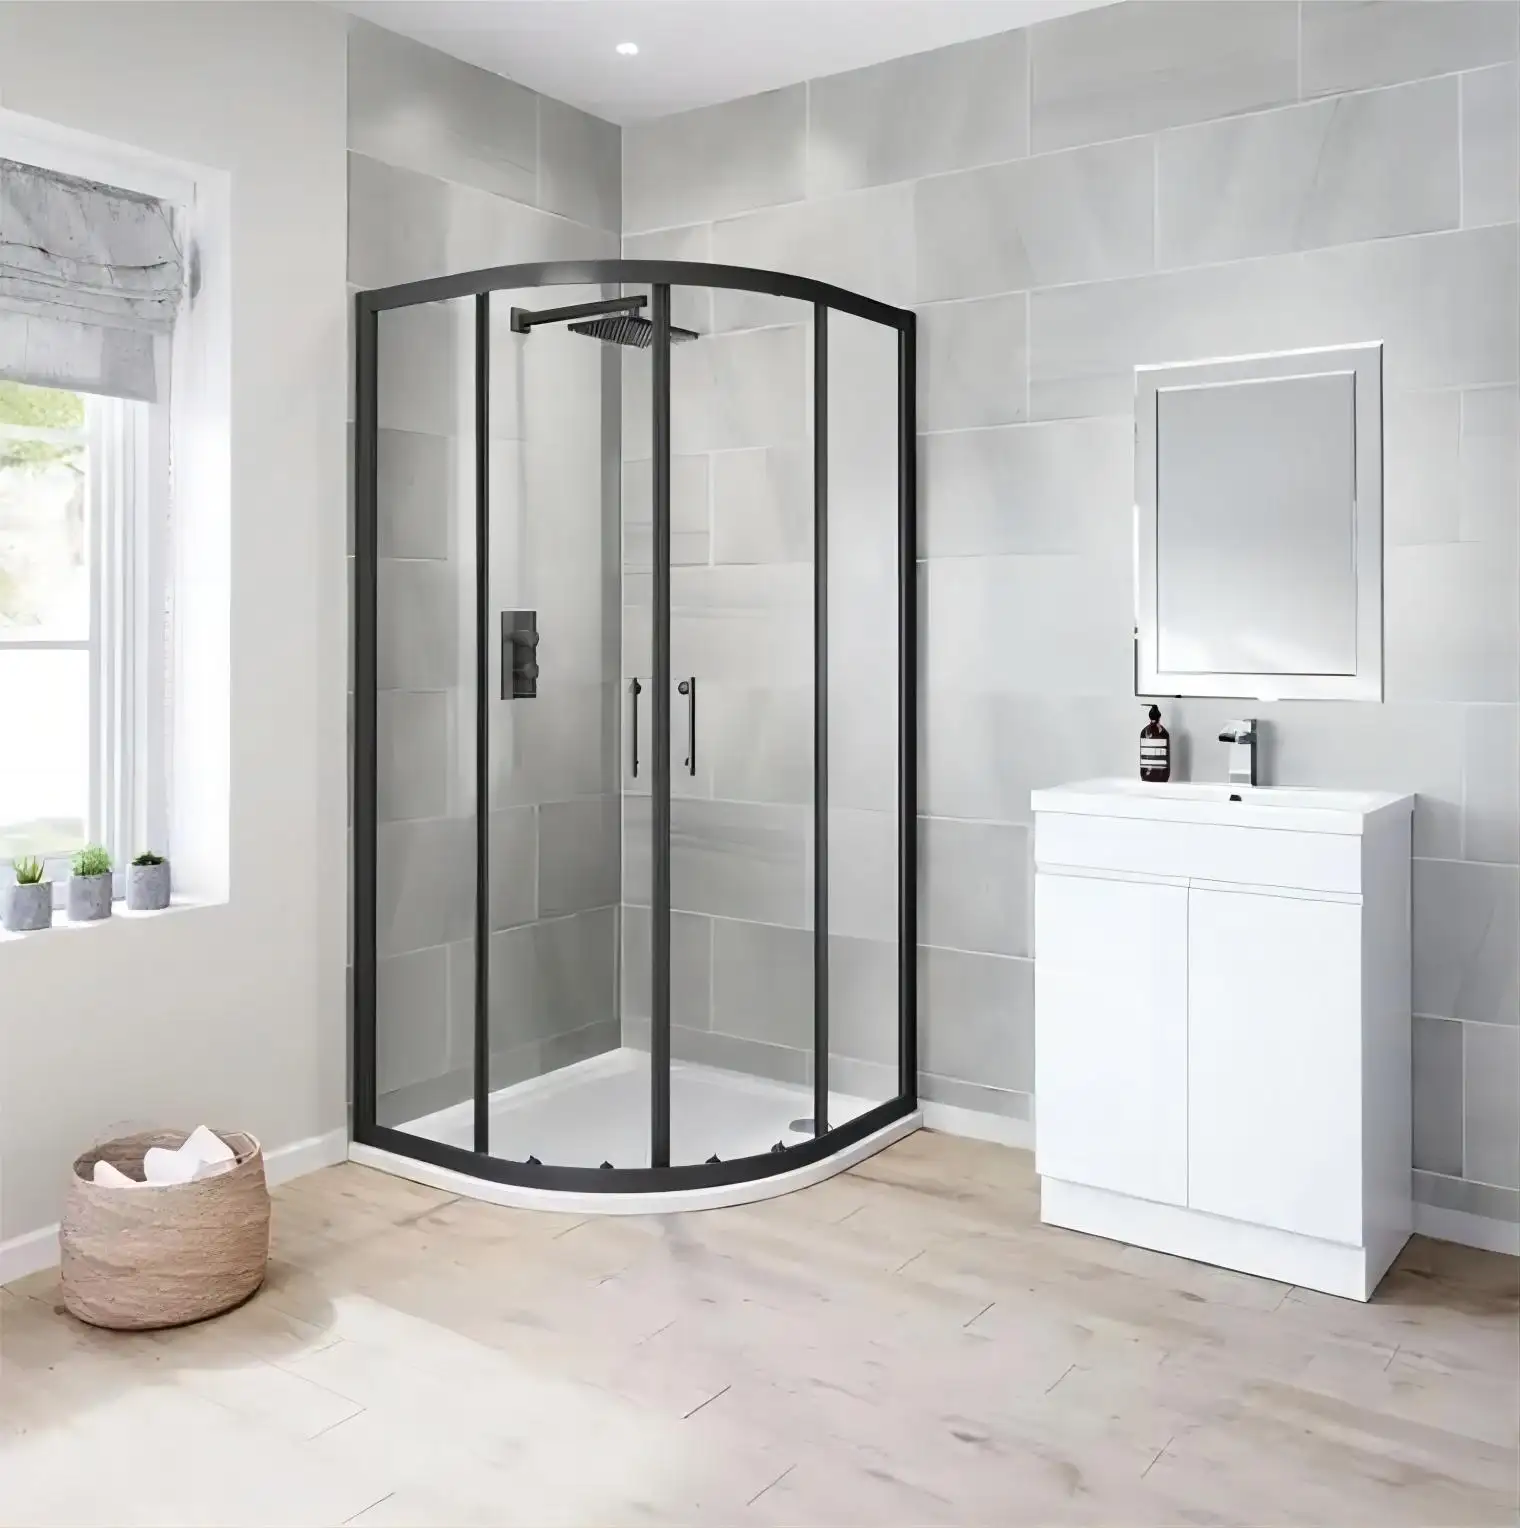 Özel tasarım ucuz akrilik siyah çerçeve duş odası muhafazaları sürgülü cam duş kapısı alüminyum donanım ile